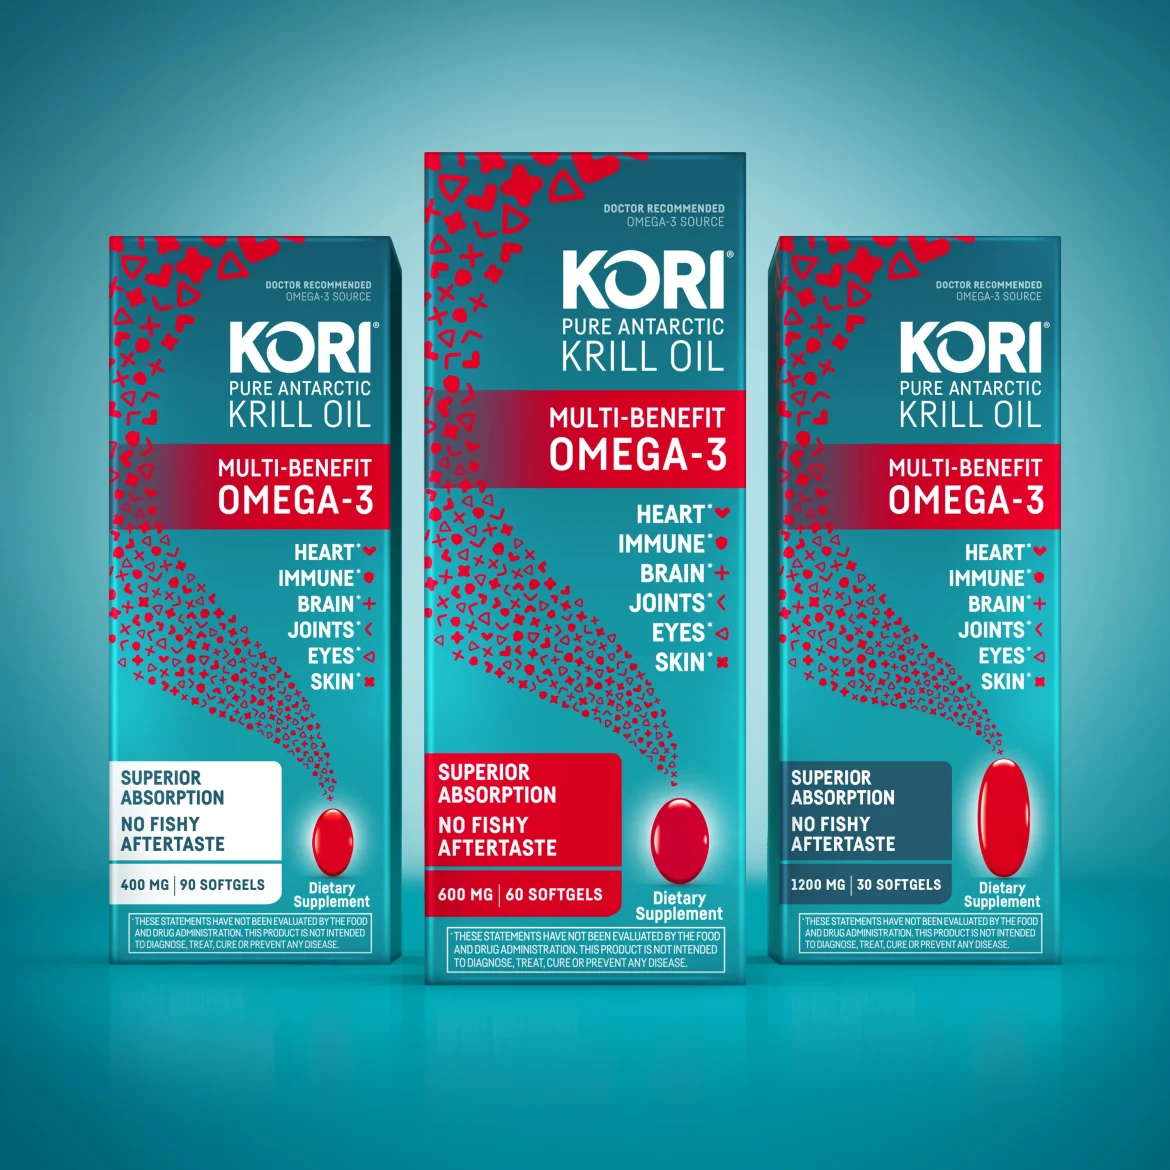 Kori Krill oil supplement for heart health